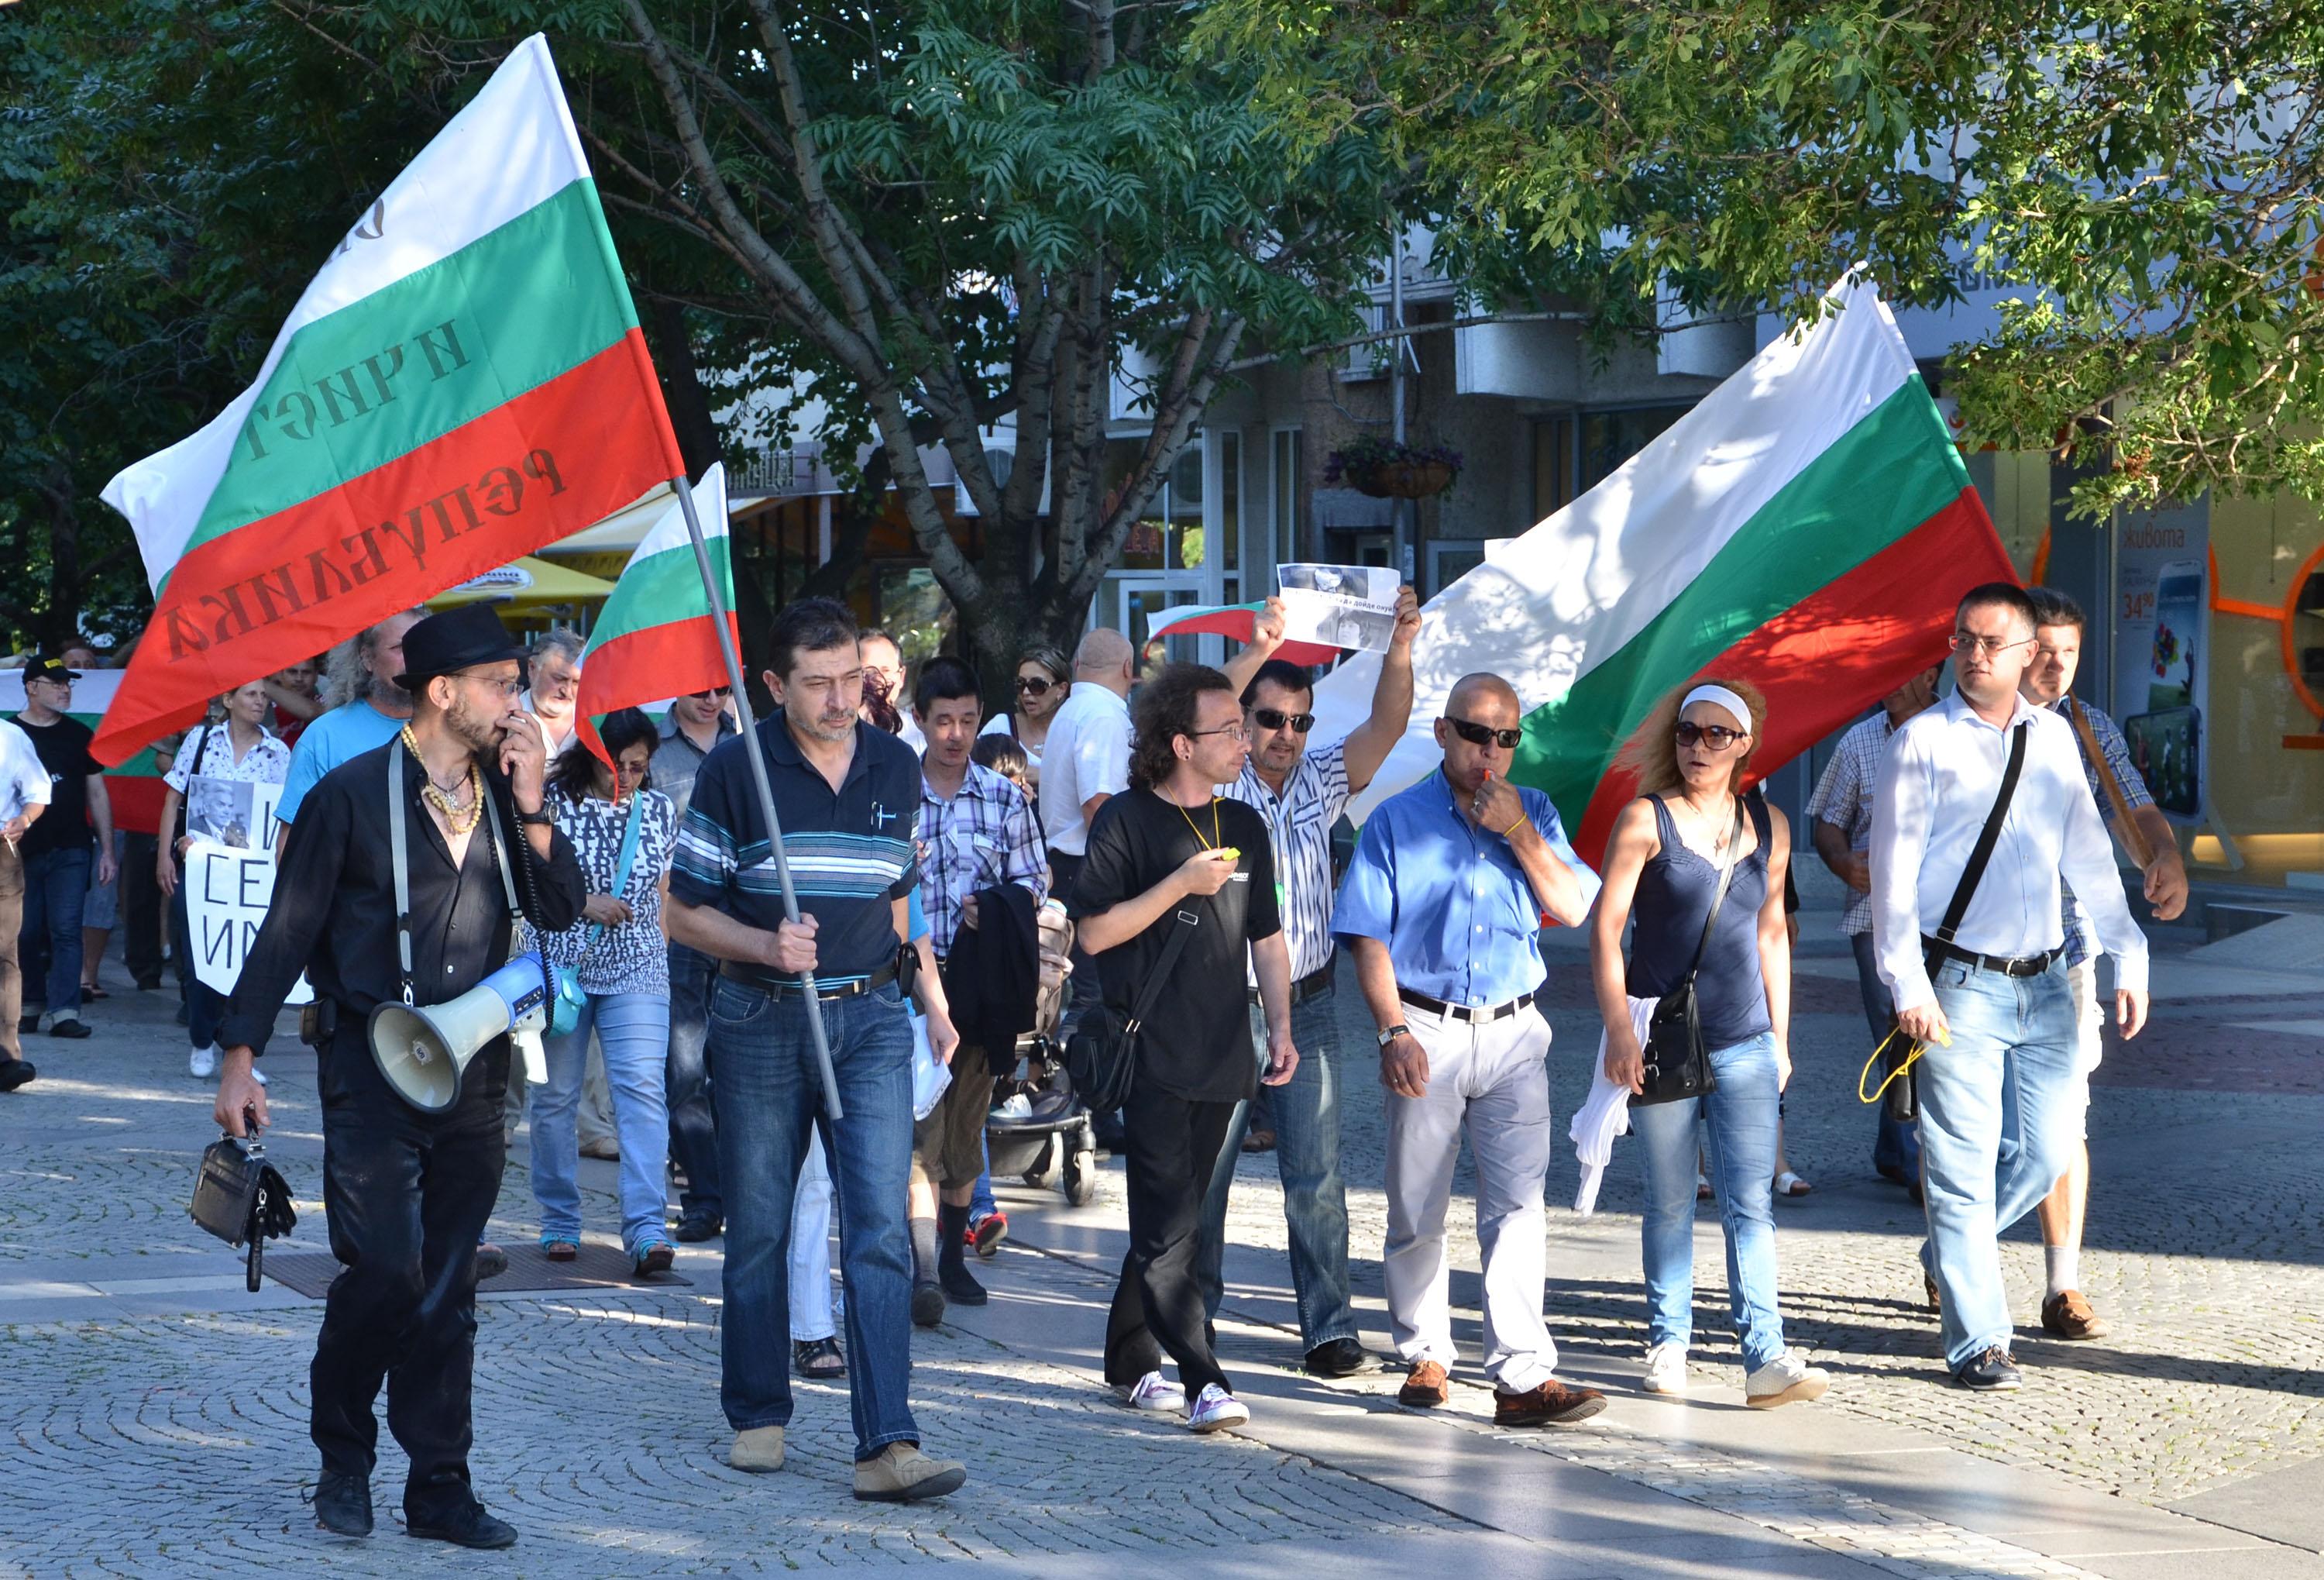 Стотици протестираха в Сливен и Благоевград (ГАЛЕРИЯ НА ПРОТЕСТА)